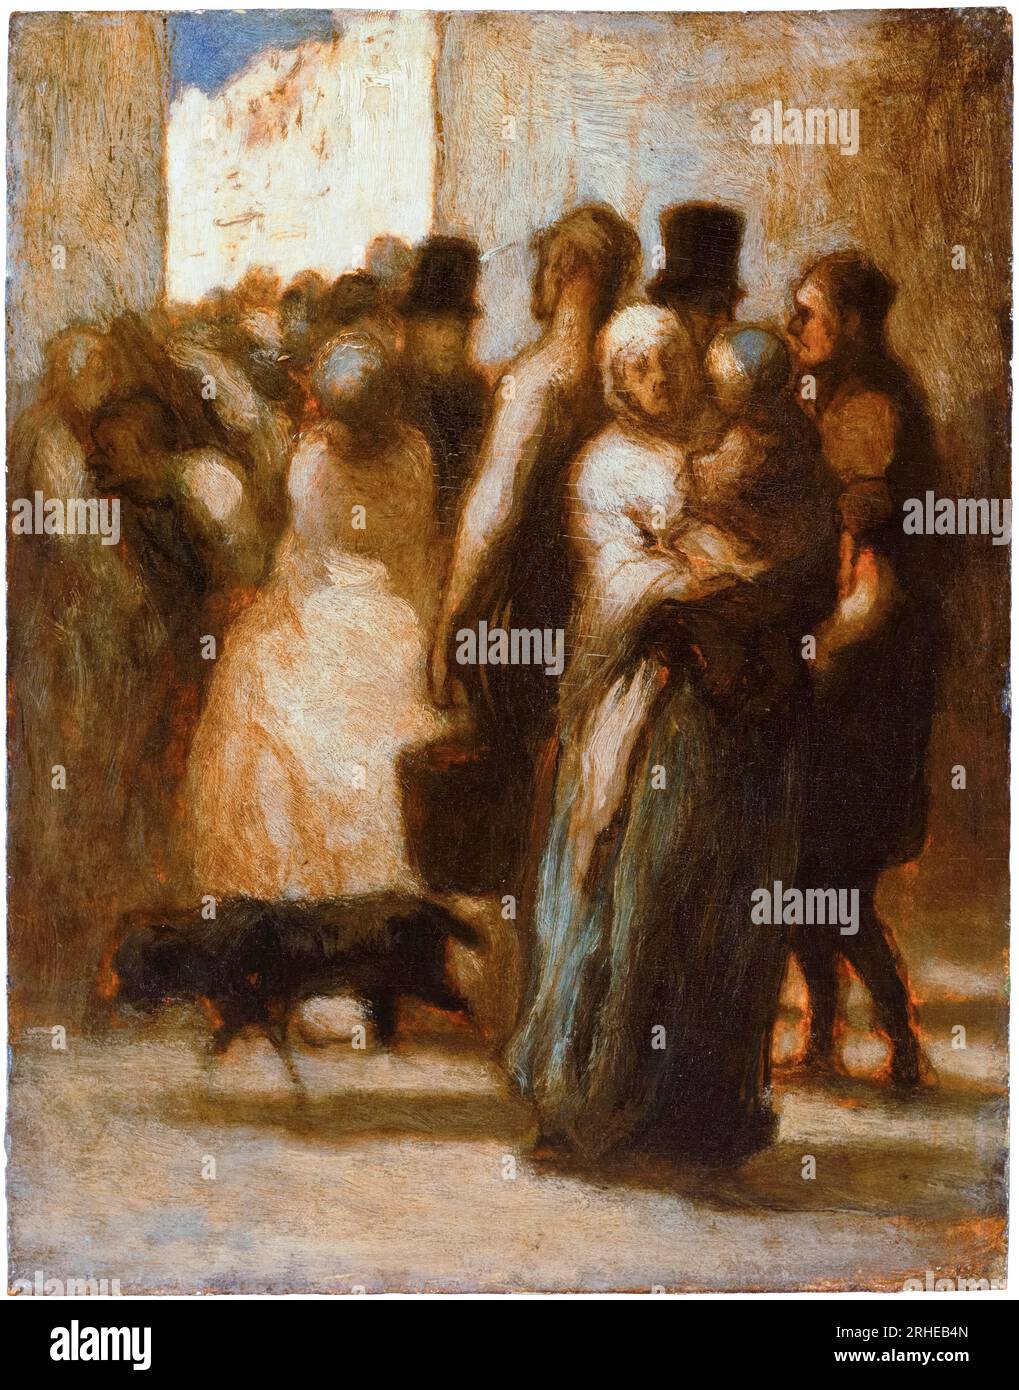 Honoré Daumier, to the Street, dipinto ad olio su tavola, 1840-1850 Foto Stock